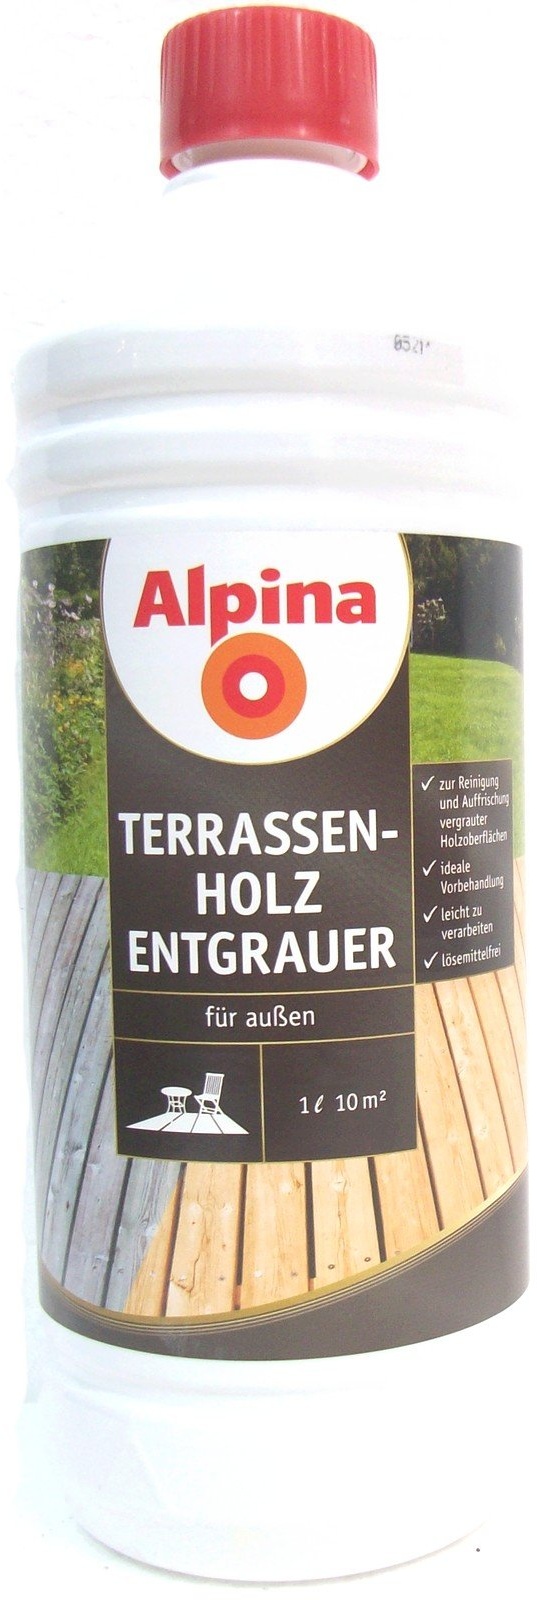 1L Alpina Terassen Holzentgrauer Holzreiniger Holz Reiniger Entgrauer